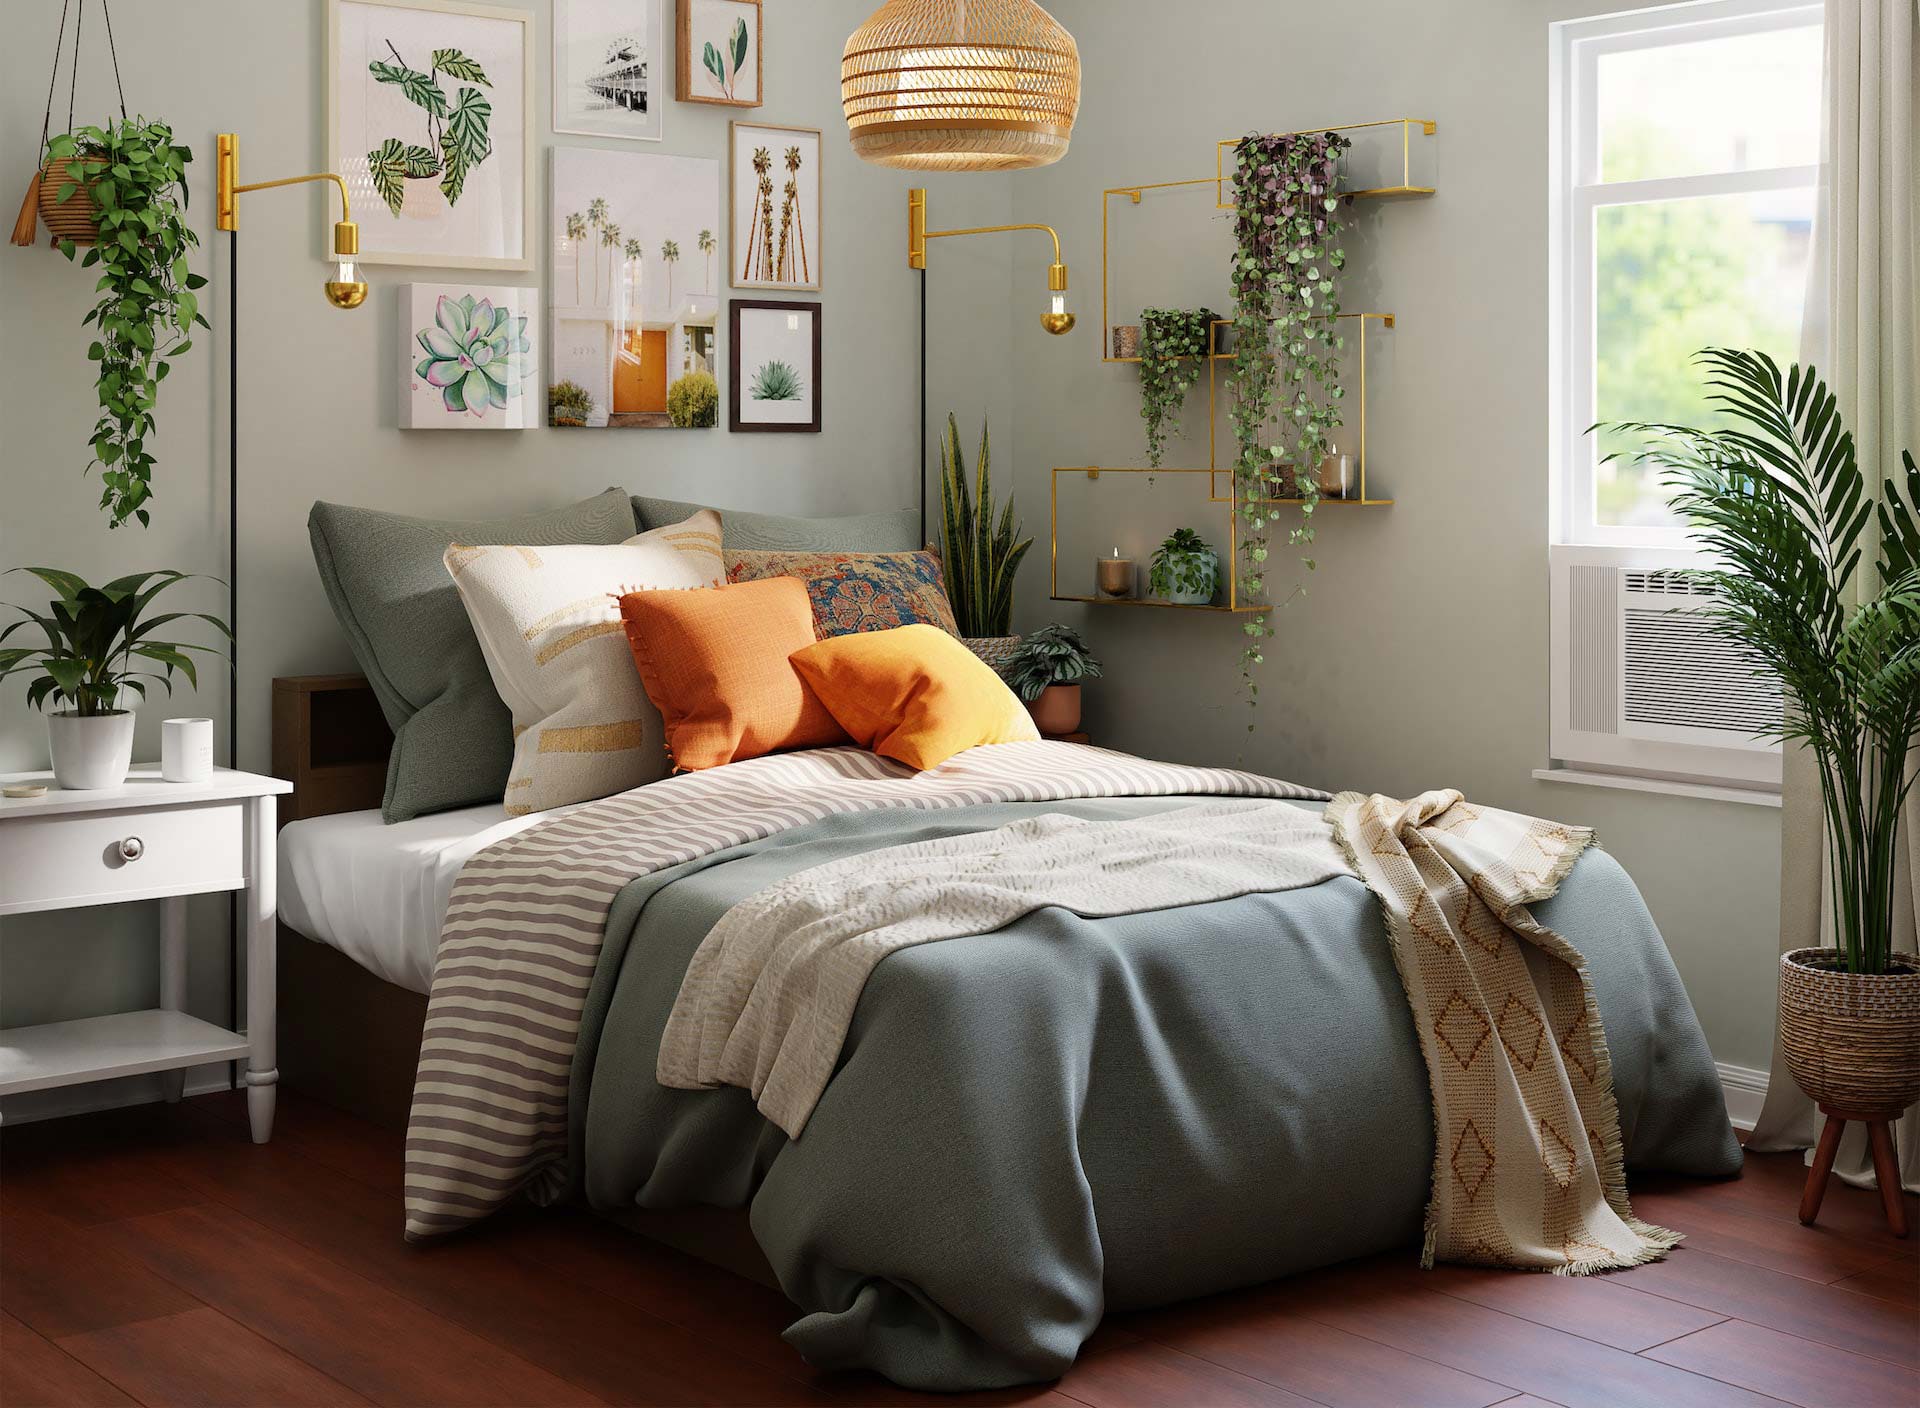 Chambre à coucher confortable avec beaucoup de plantes.